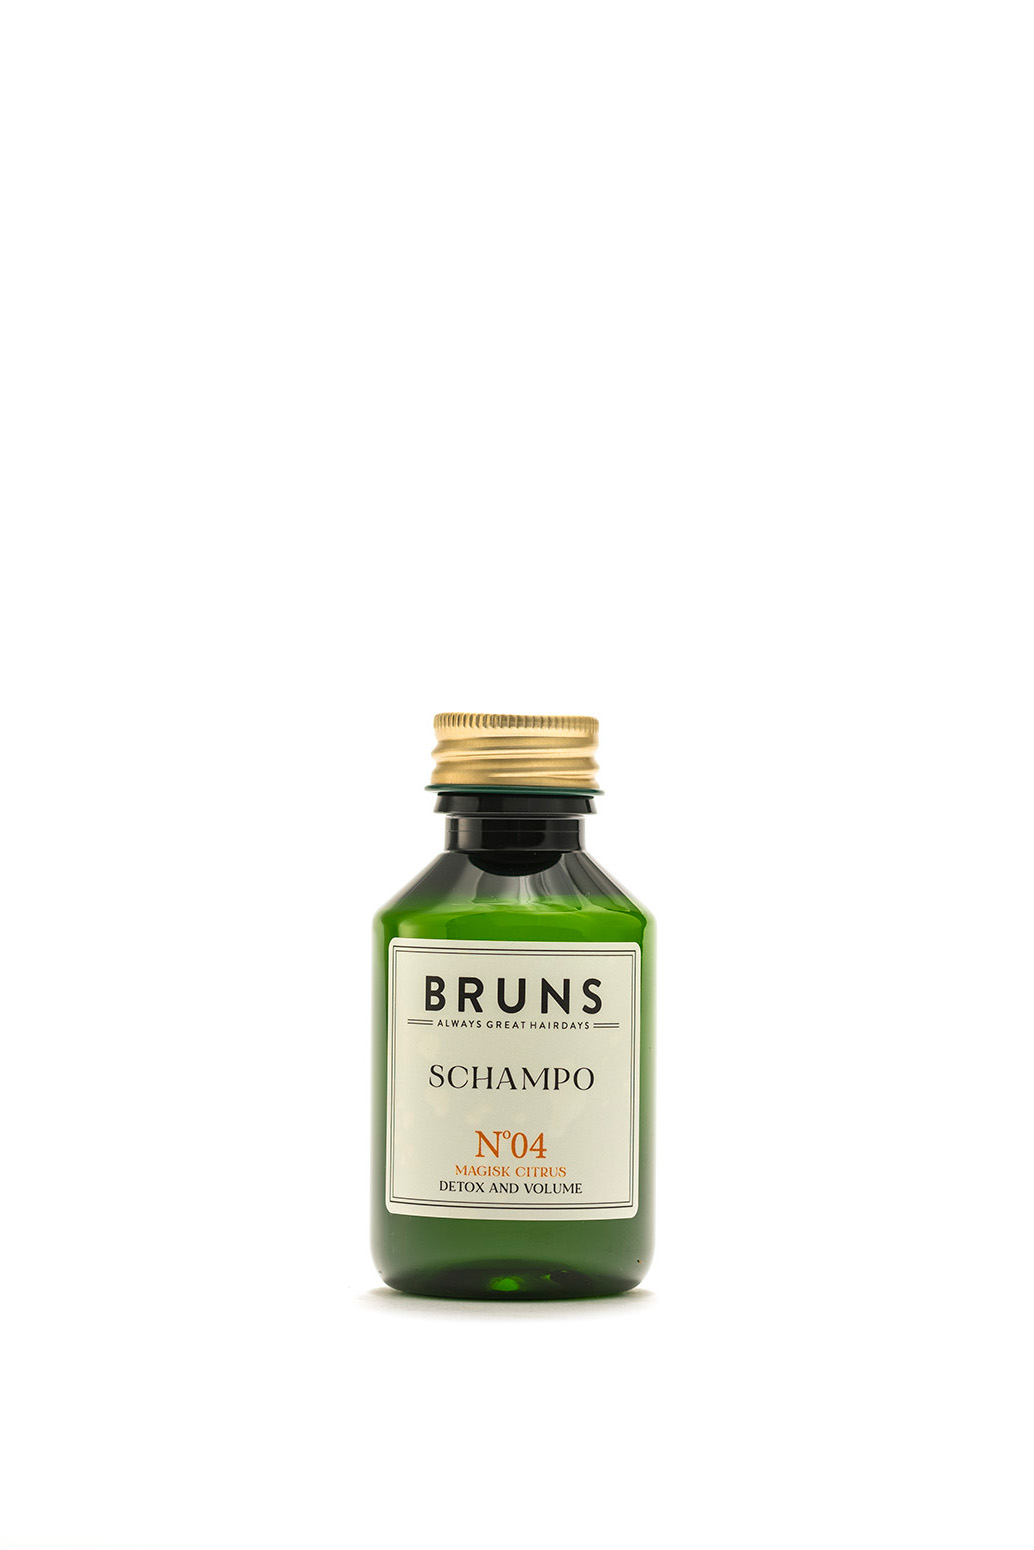 Bruns Products Schampo 04 Magisk Citrus 100ml - För normalt till fett hår, Även som detox